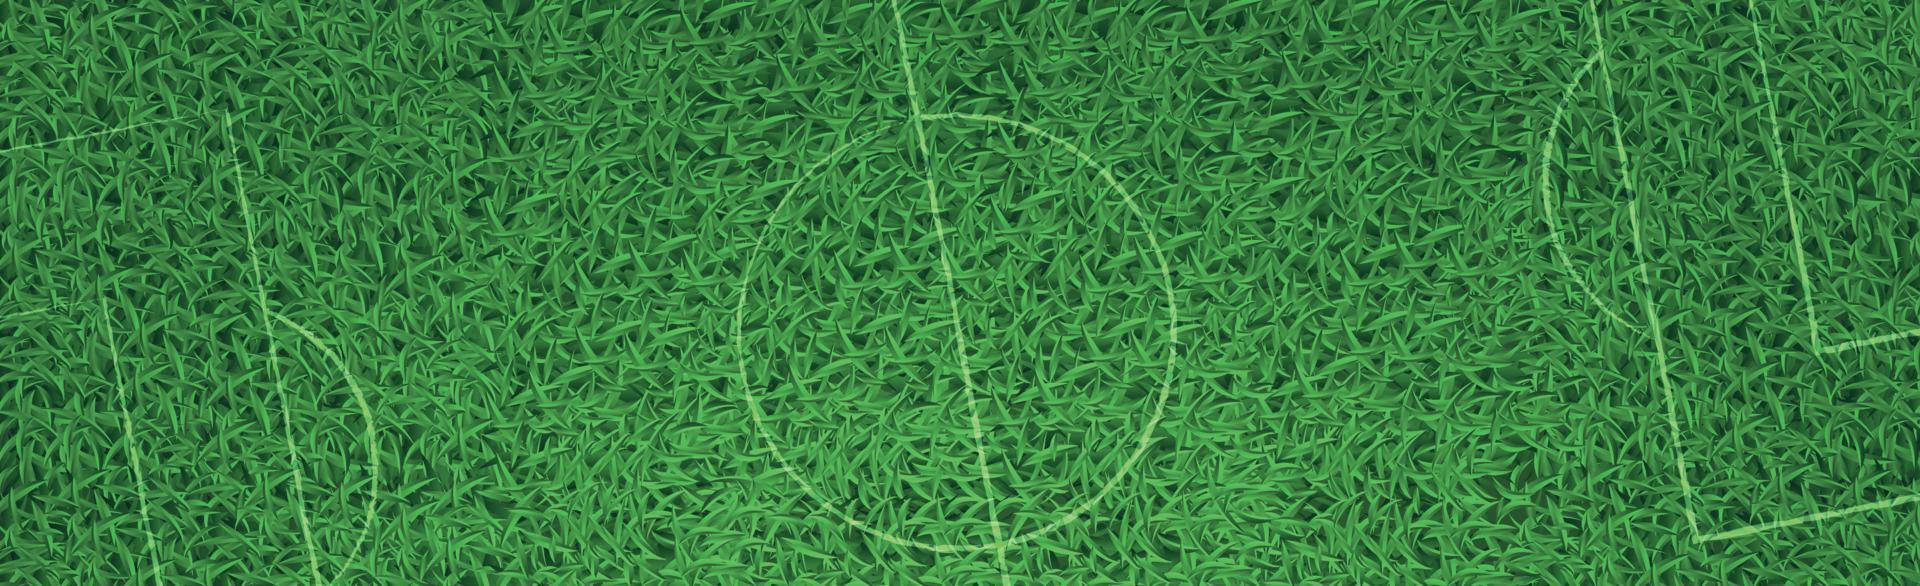 Panorama grüner Hintergrund realistischer Gras-Fußballrasen mit Markierungen - Vektor